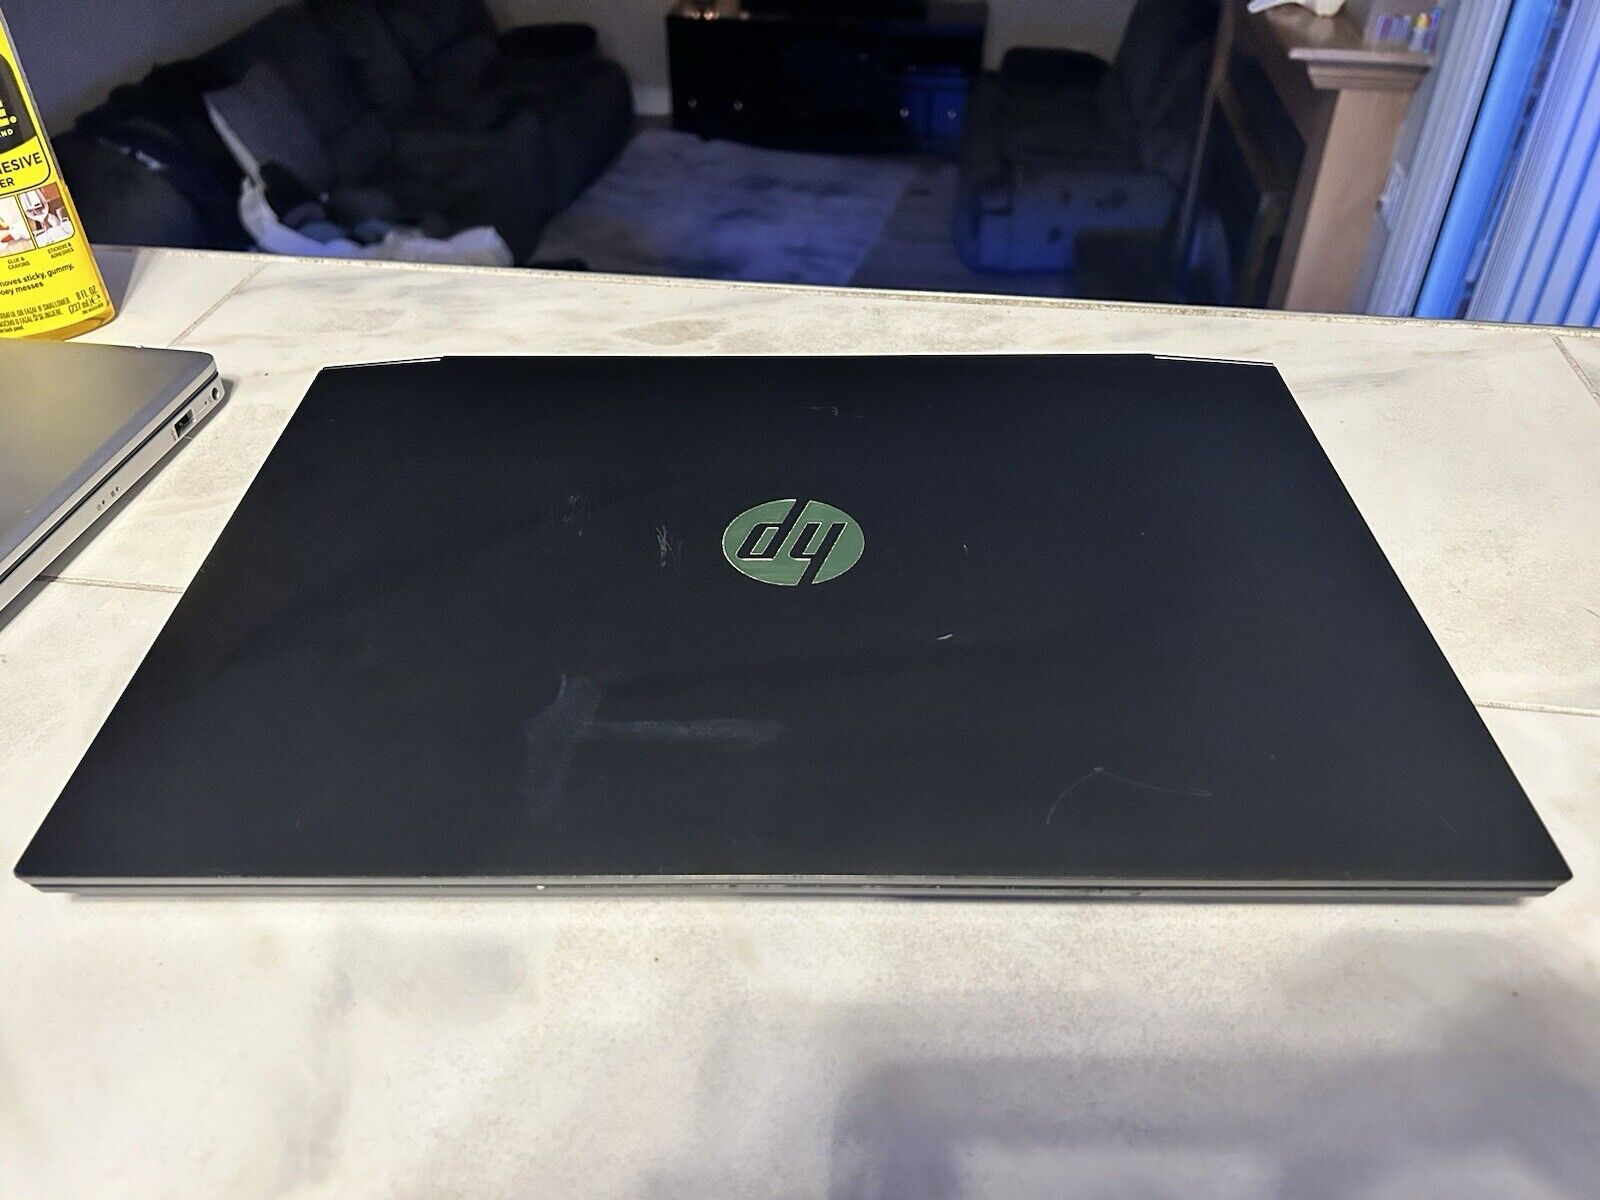 HP Pavilion gaming laptop